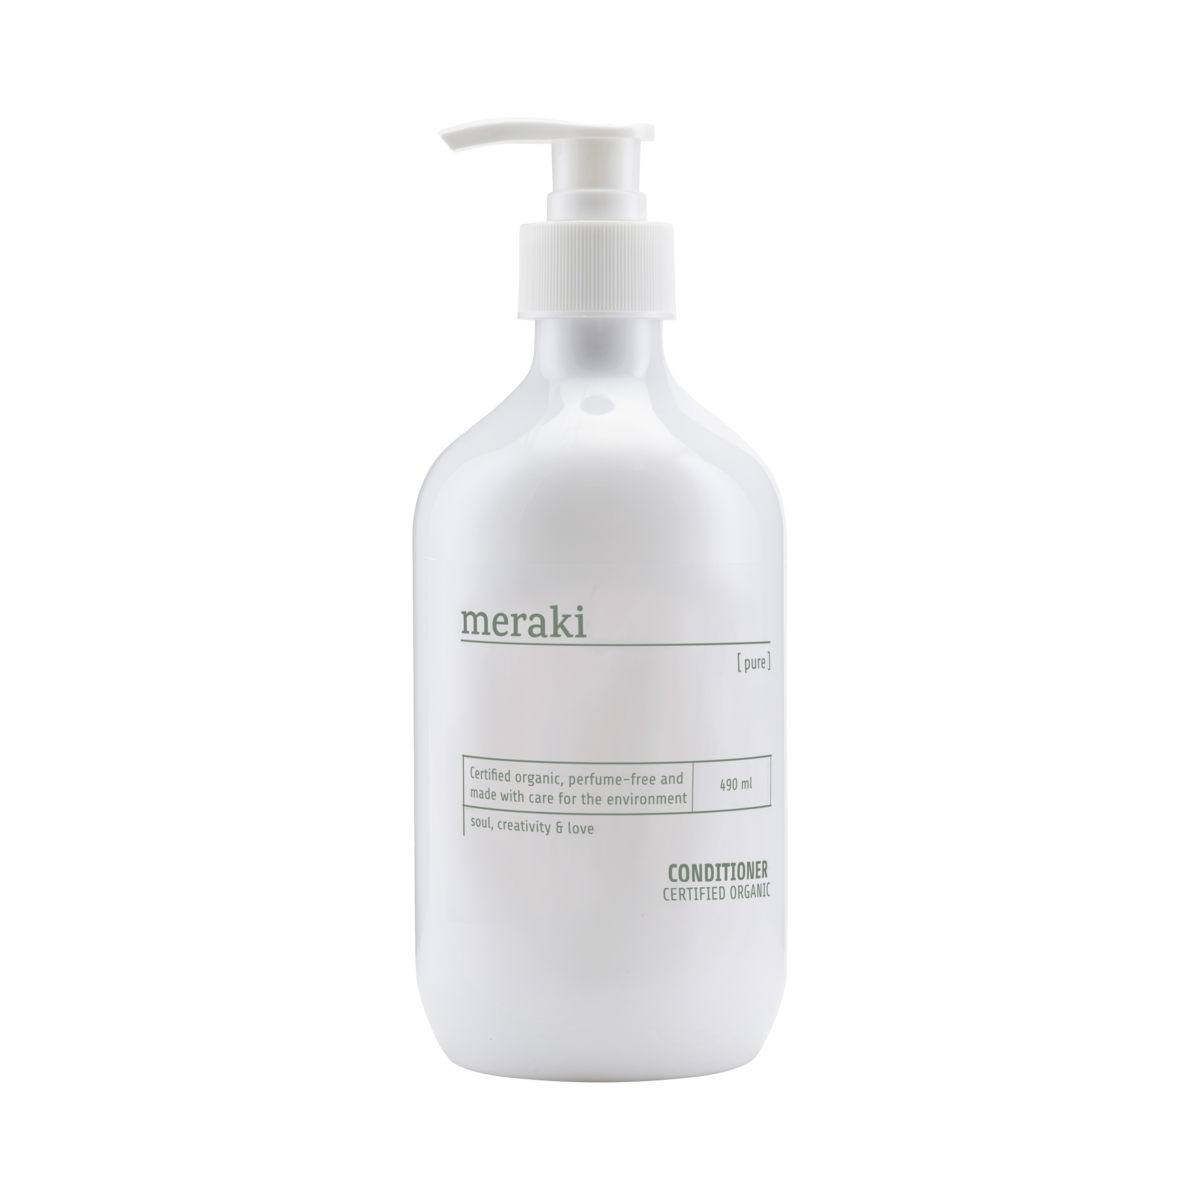 Meraki - Pure Balsam 490 ml (Mkas91/309770091)